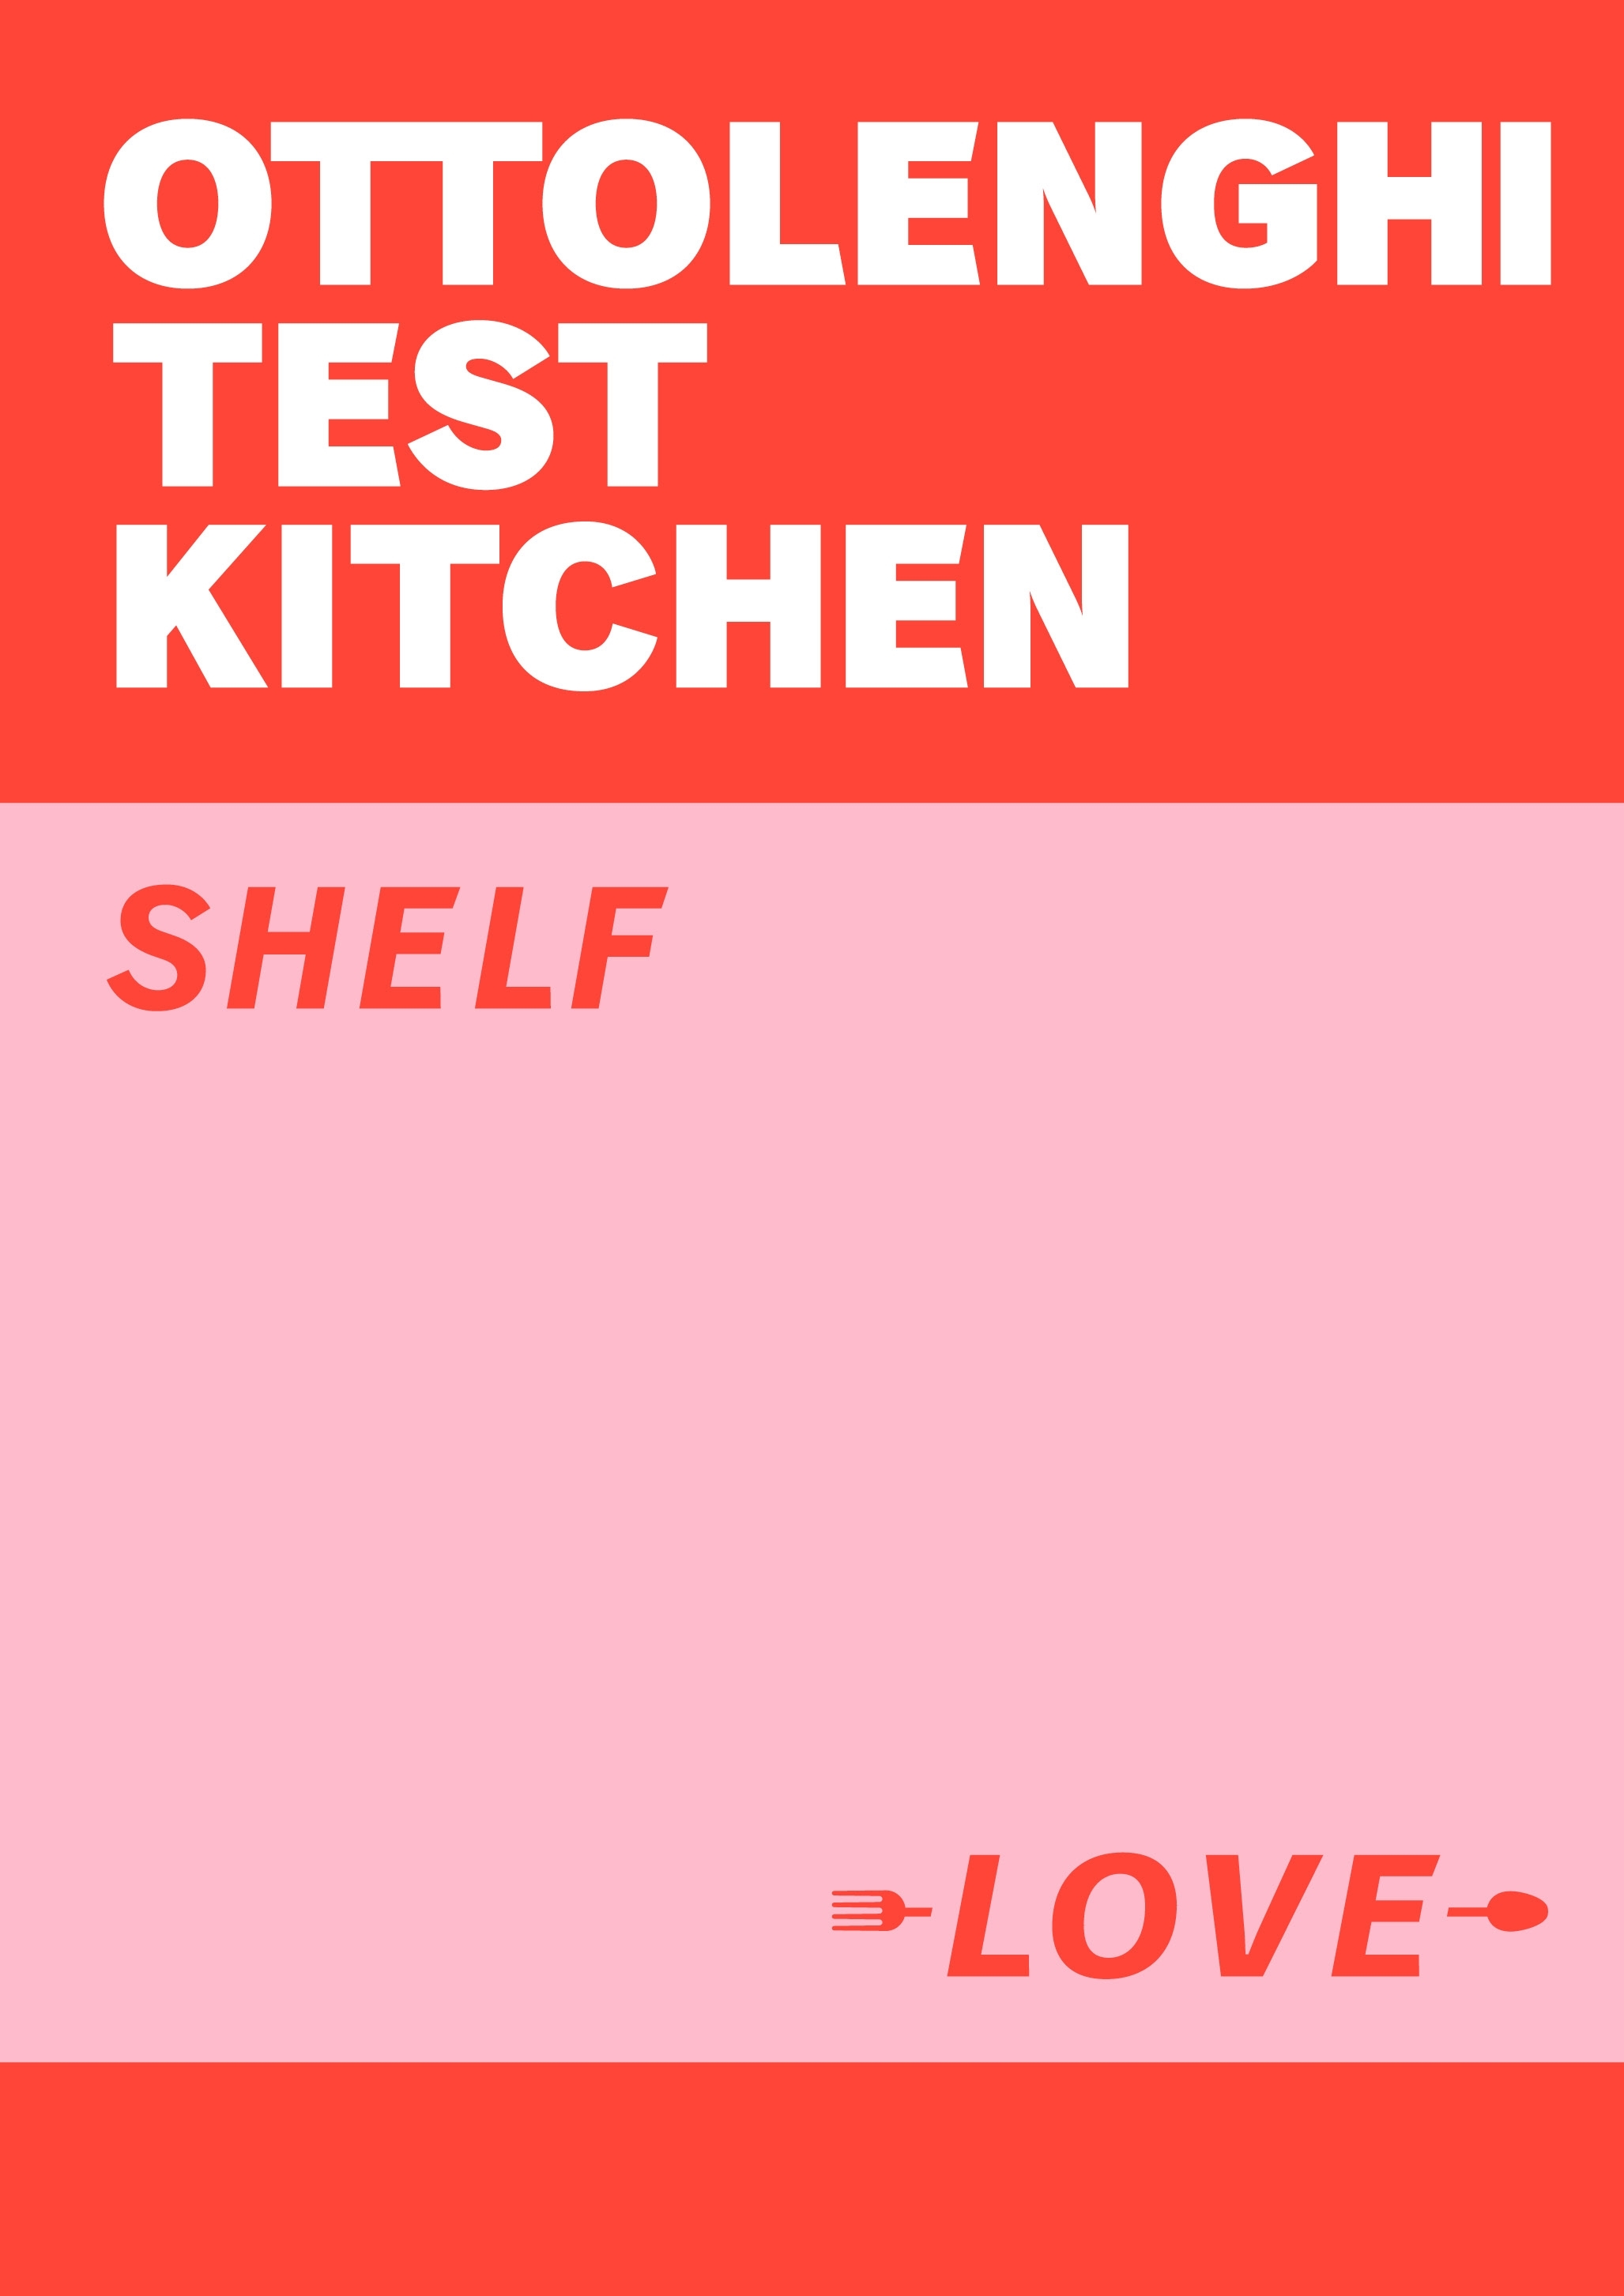 Ottolenghi Test Kitchen: Shelf Love by Yotam Ottolenghi - Penguin